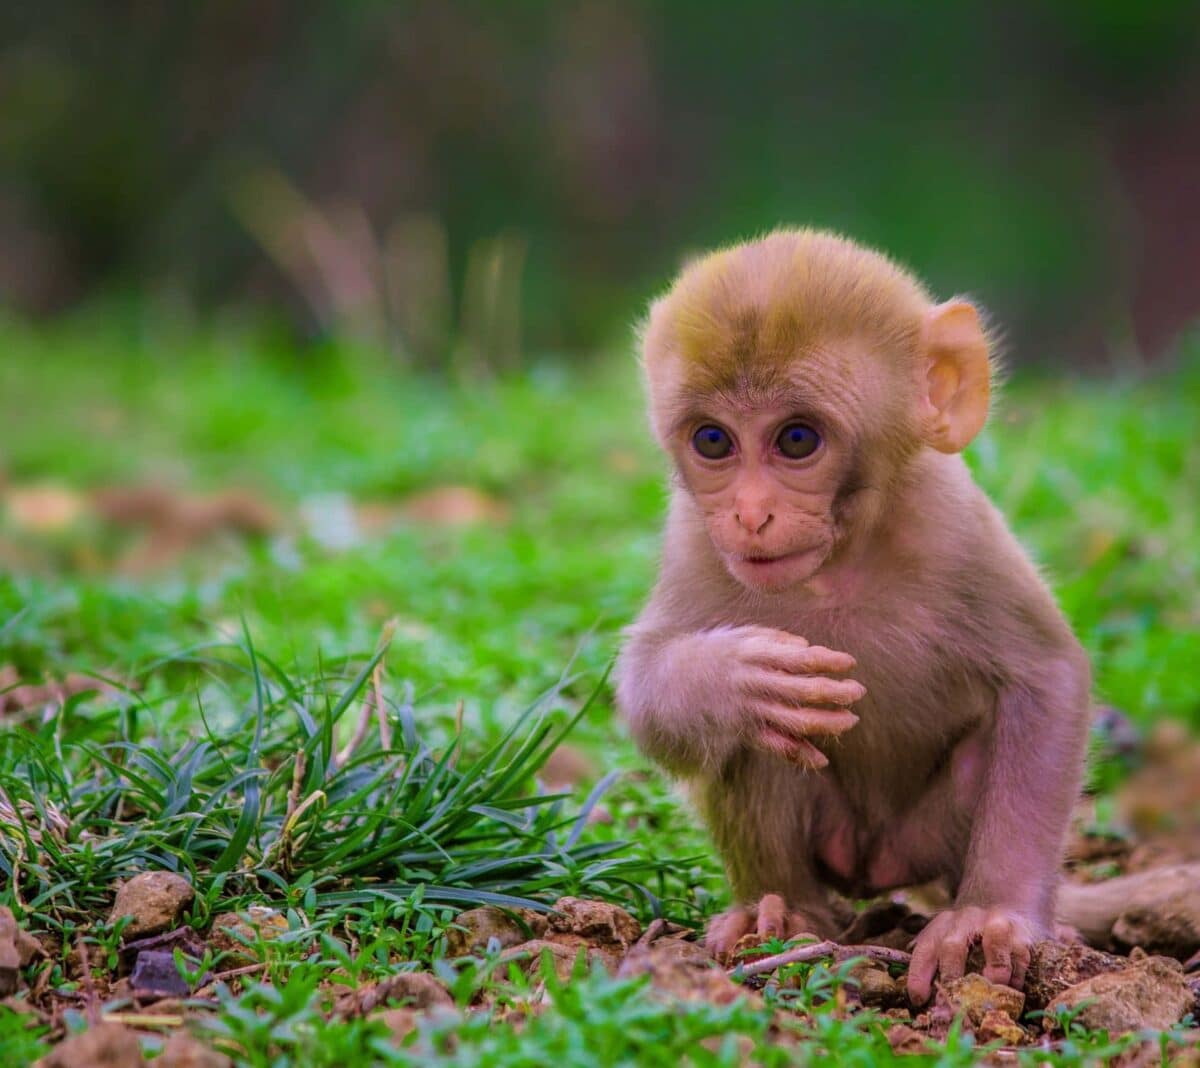 Explorons le charme unique du singe laid : au-delà des apparences